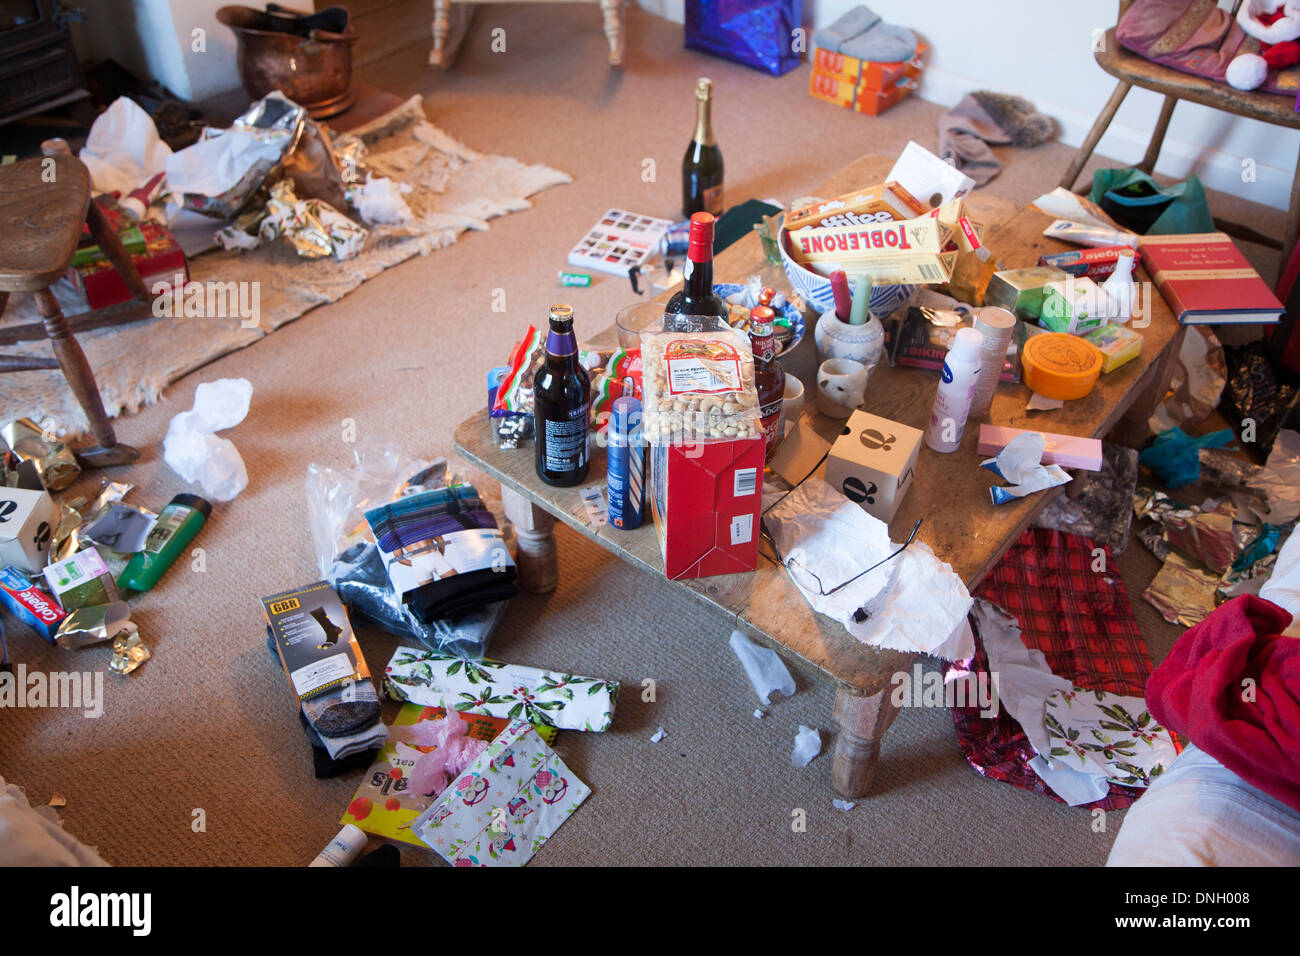 Durcheinander von Weihnachten präsentiert und Geschenkpapier verstreut ein Zuhause, UK Stockfoto